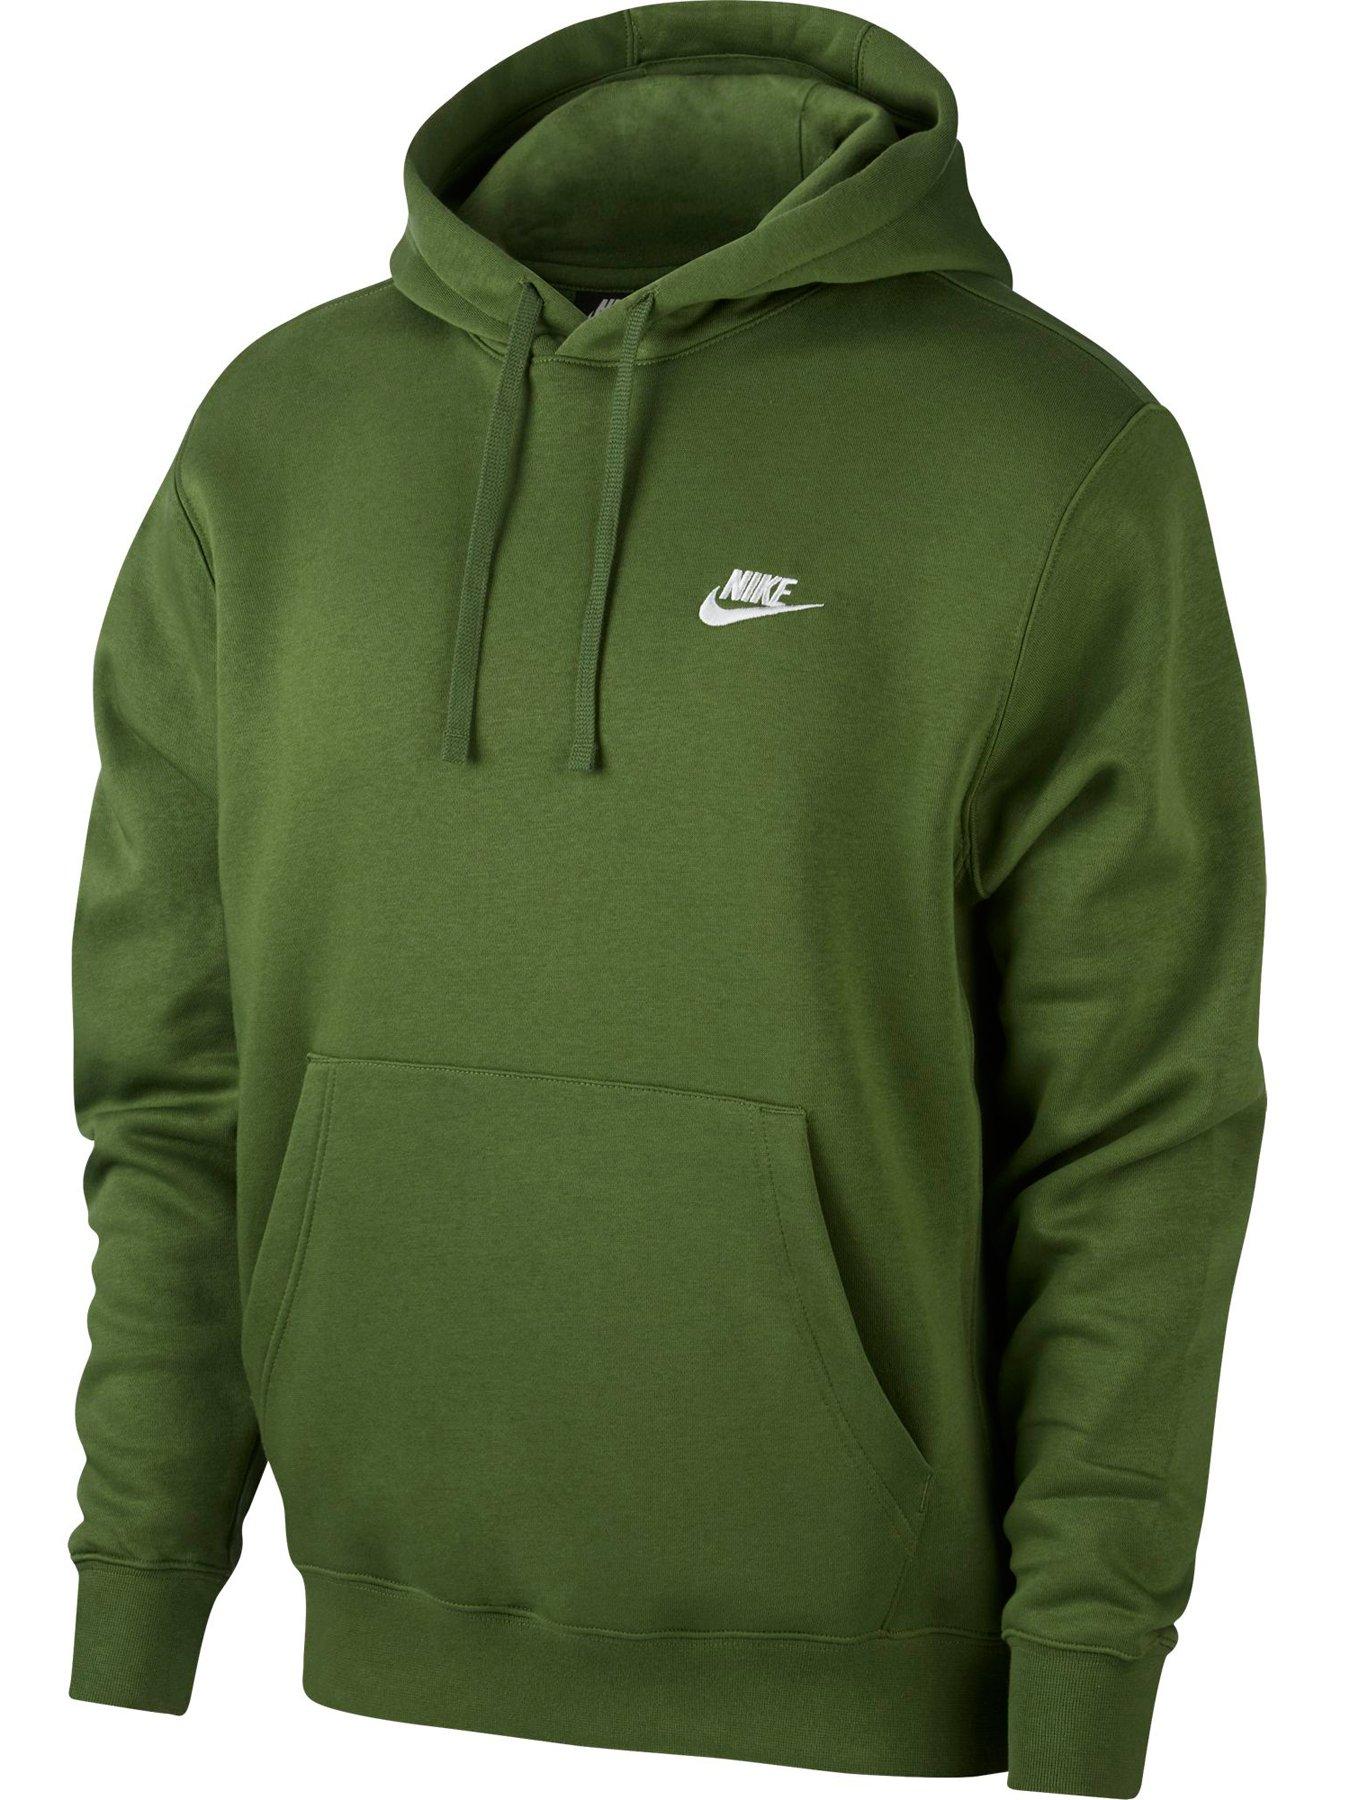 nike green pullover hoodie